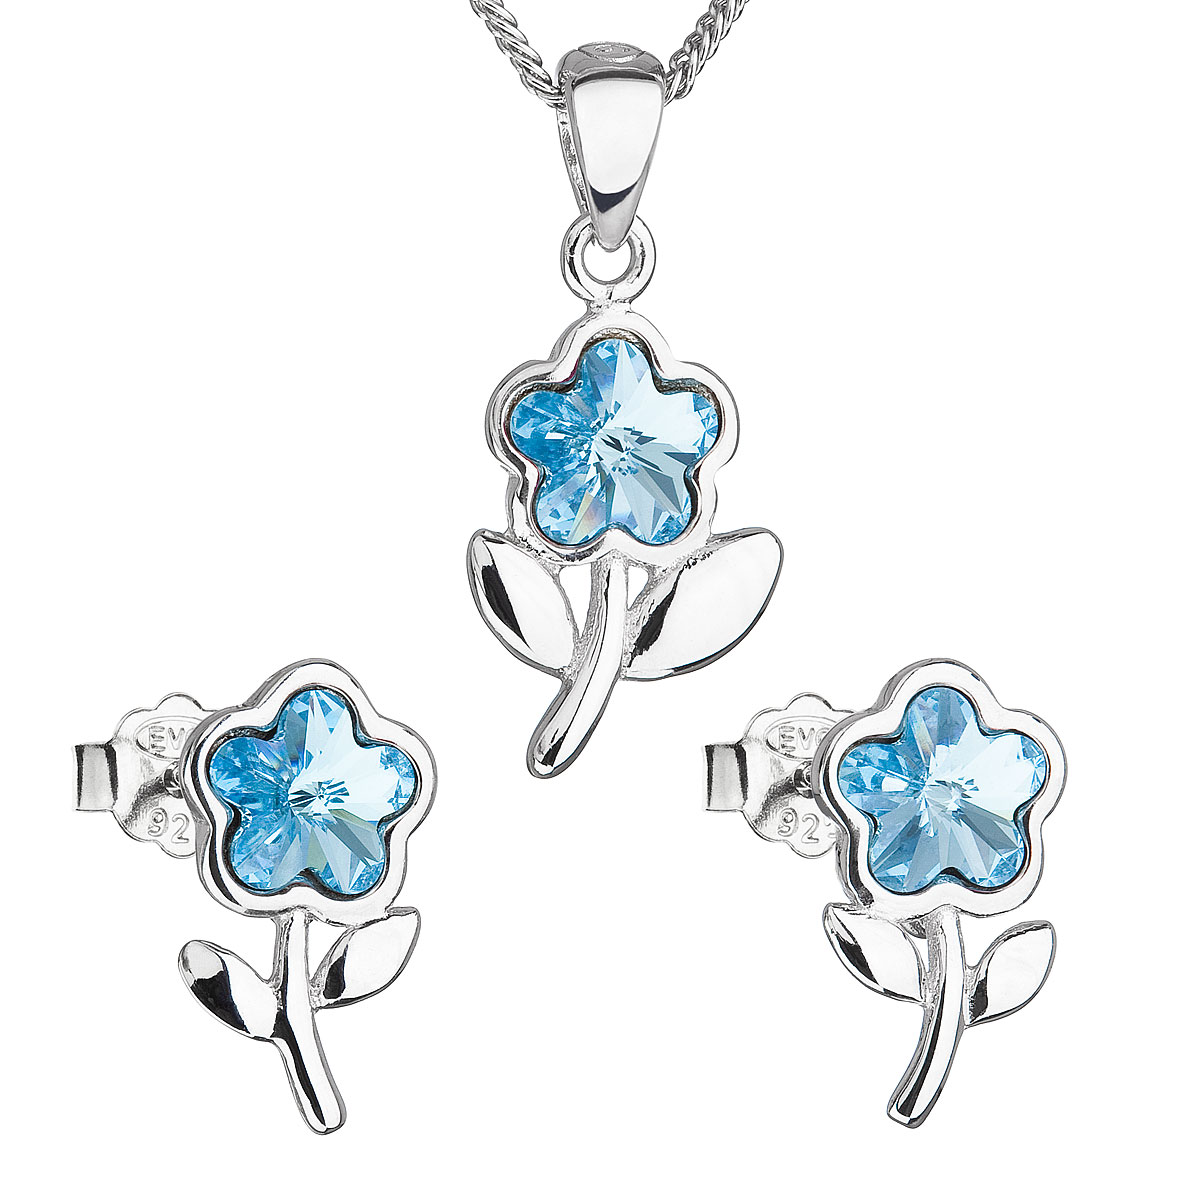 Evolution Group Sada šperků s krystaly Swarovski náušnice,řetízek a přívěsek modrá kytička 39172.3